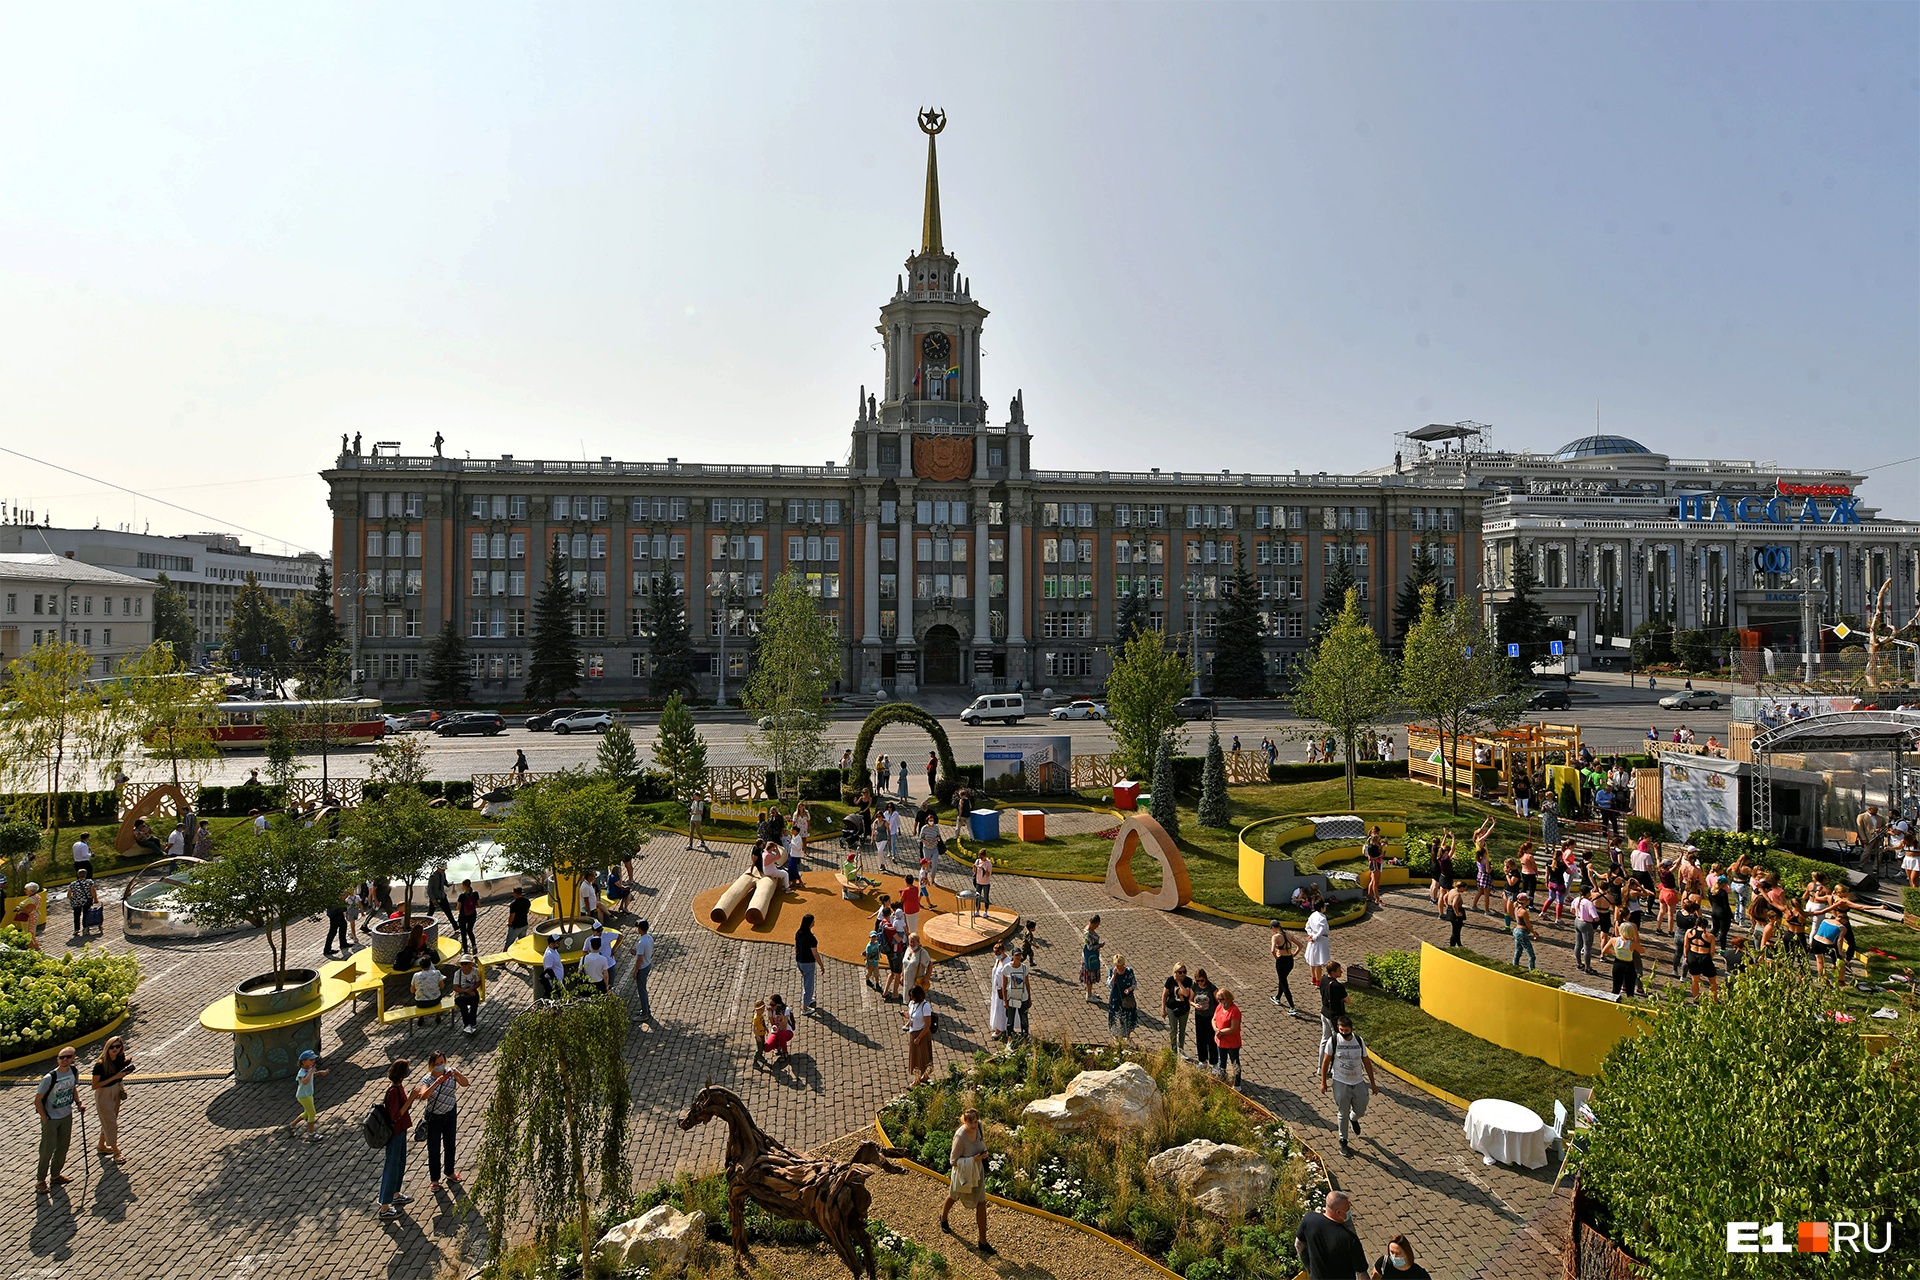 Превращение площади 1905 года из парковки в цветущий сад стало одним из самых запоминающихся событий в <a href="https://www.e1.ru/text/gorod/2021/08/14/70078532/" class="_" target="_blank">День города</a>